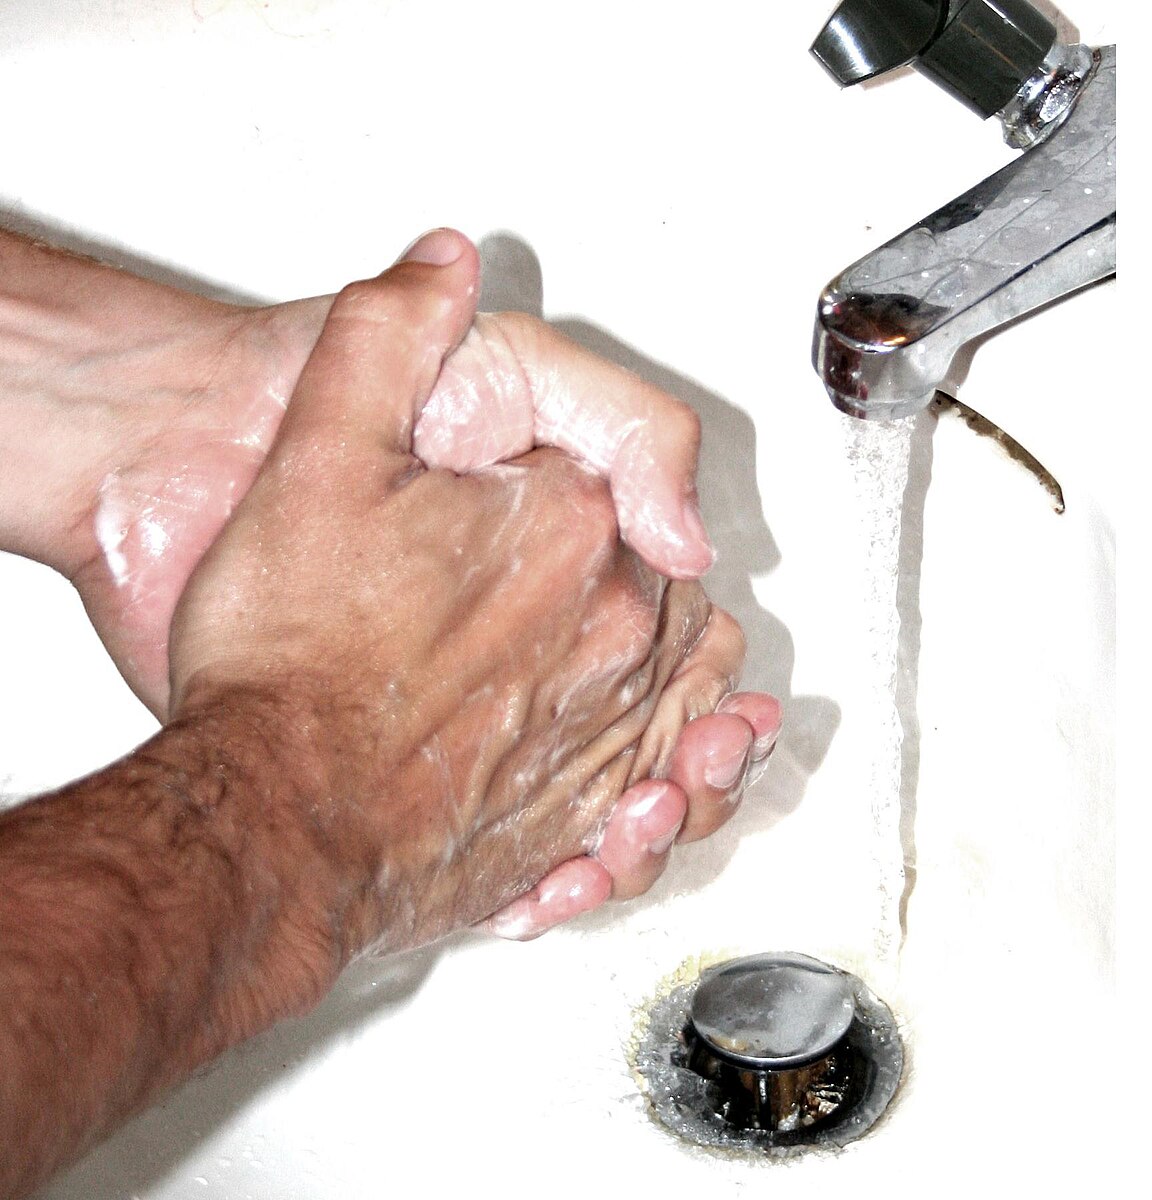 Foto: Das Waschen der Hände ist eine von zahlreichen hygienischen Maßnahmen im Alltag